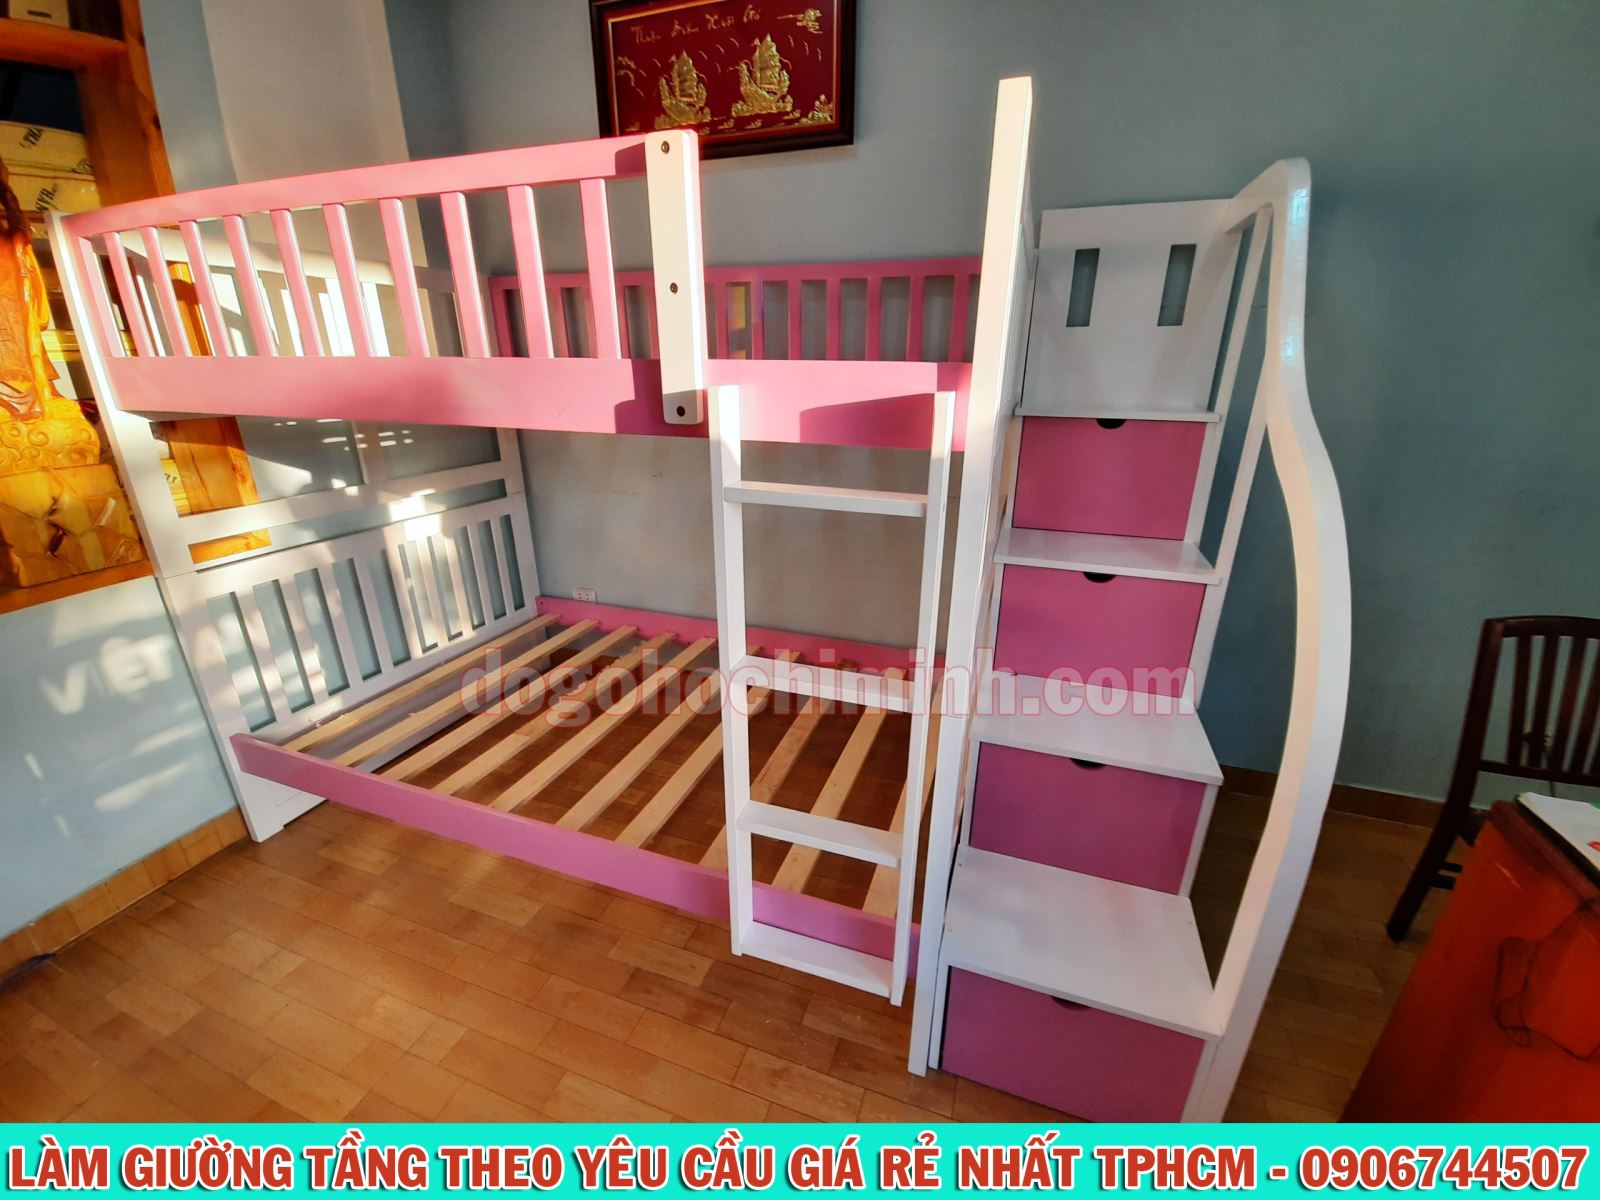 Mẫu giường 2 tầng độc quyền phối 2 màu trắng hồng giá rẻ đẹp tại TPHCM